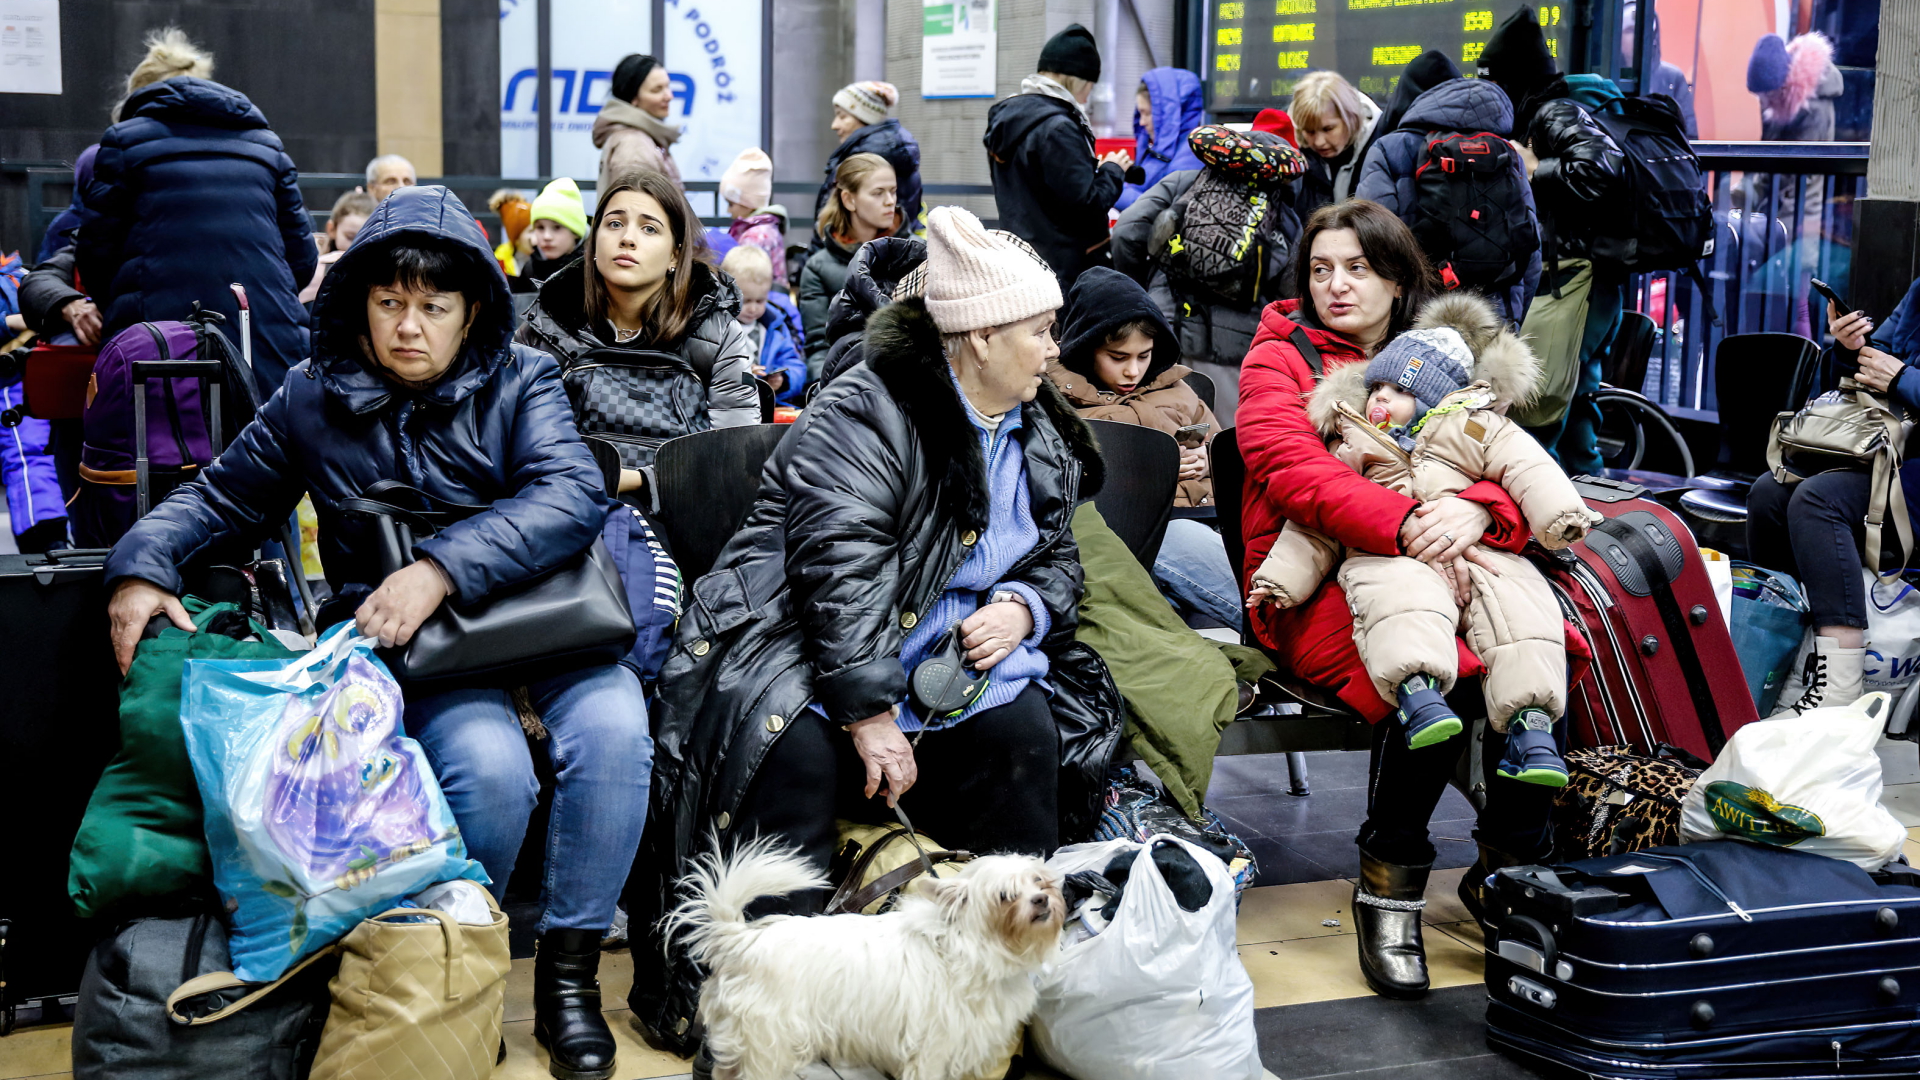 Ukrainische Flüchtlinge warten in einer Halle, nachdem sie am Hauptbahnhof in Krakau angekommen sind, da bereits mehr als eine Million Menschen aus der Ukraine nach Polen geflohen sind. | dpa